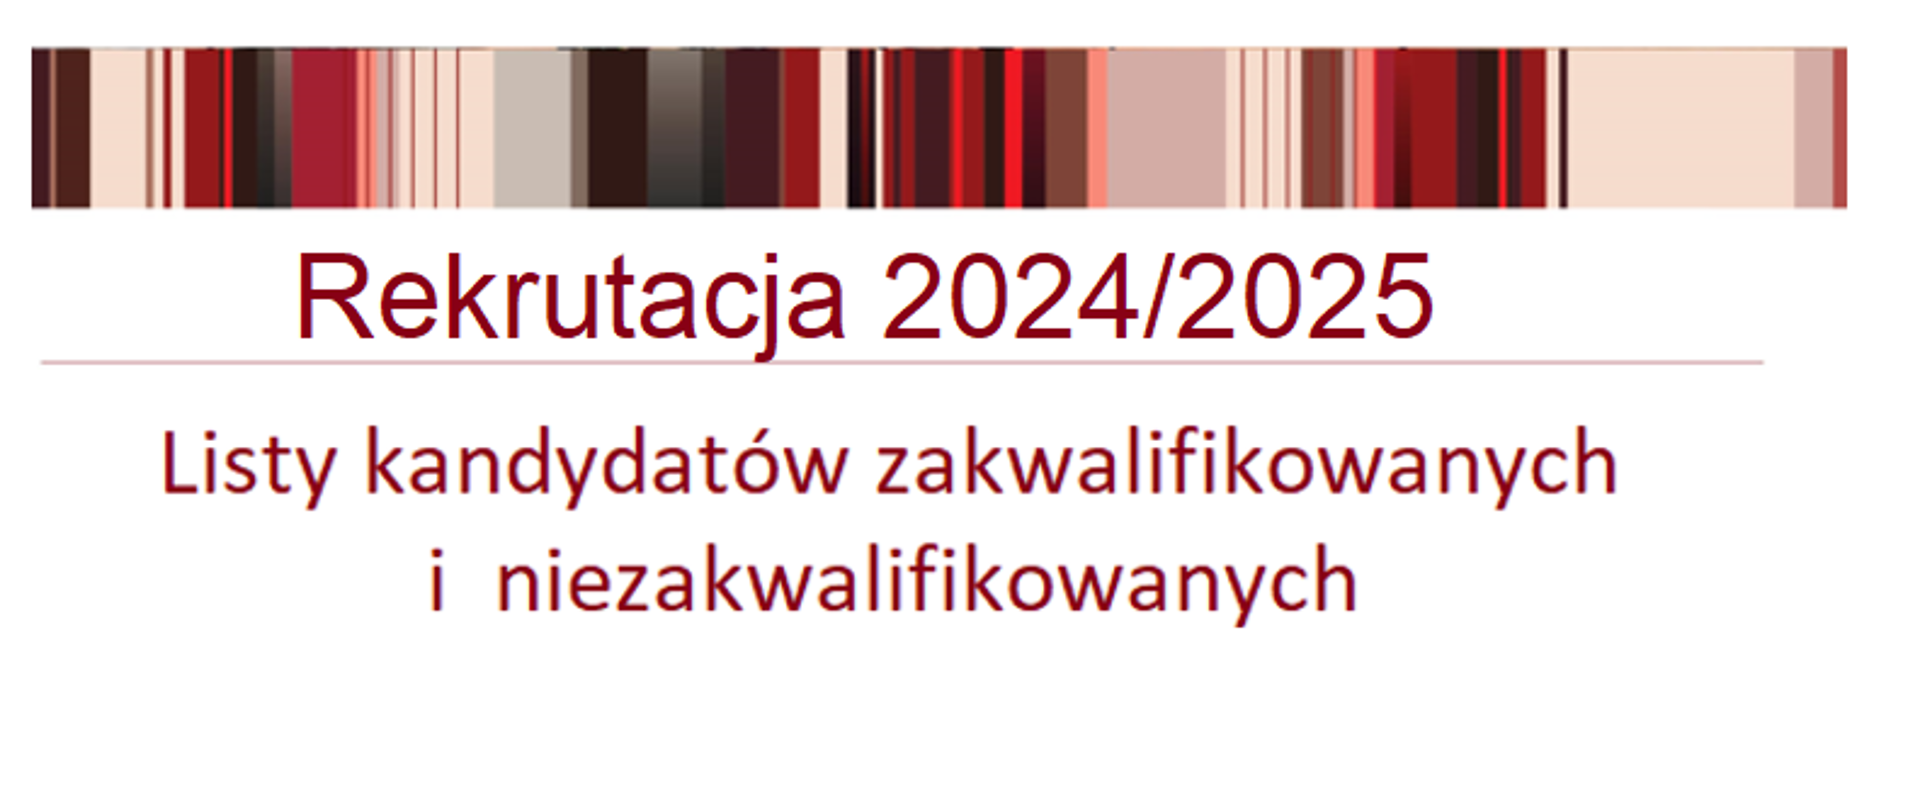 lista kandydatów zakwalifikowanych i niezakwalifikowanych 2024/2025